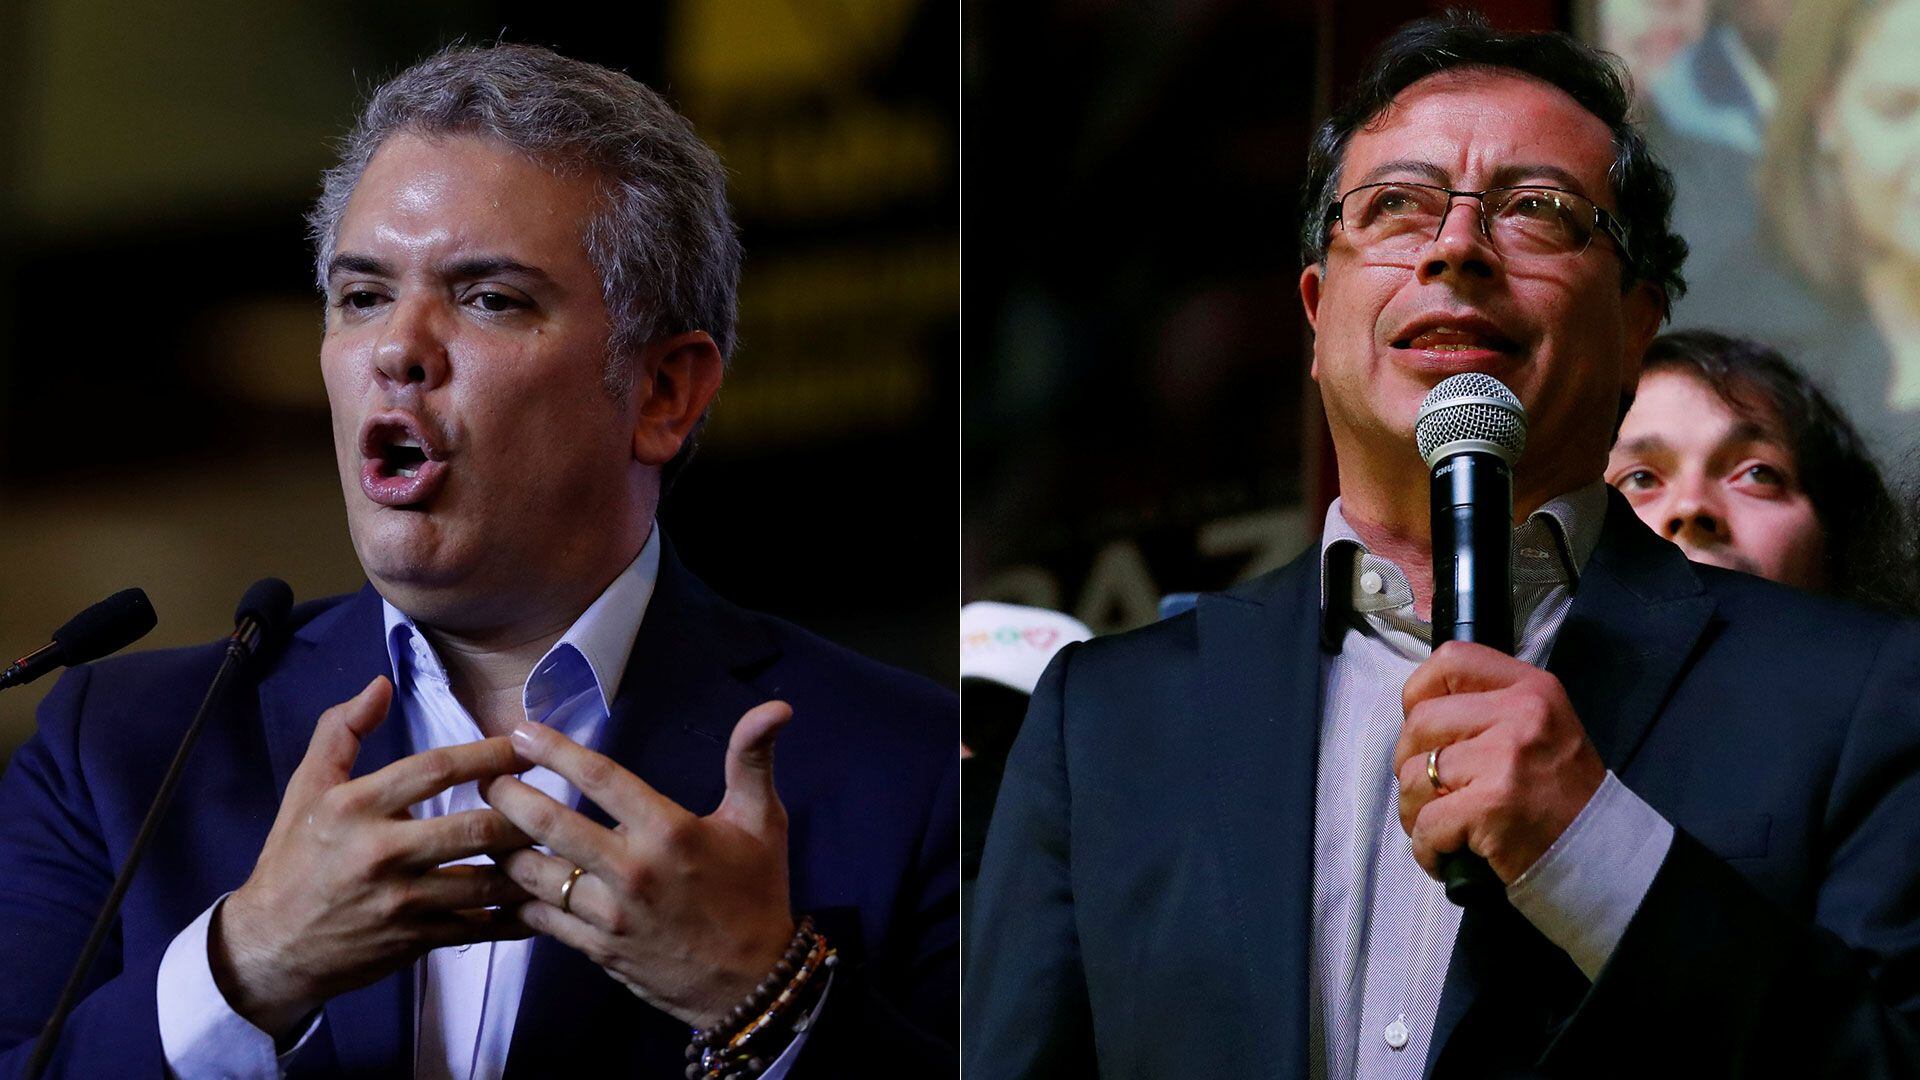 Ni Gustavo Petro, ni Iván Duque lograron que las disidencias de las Farc se expandieran en 164 municipios de Colombia, según Ariel ávila - crédito Reuters